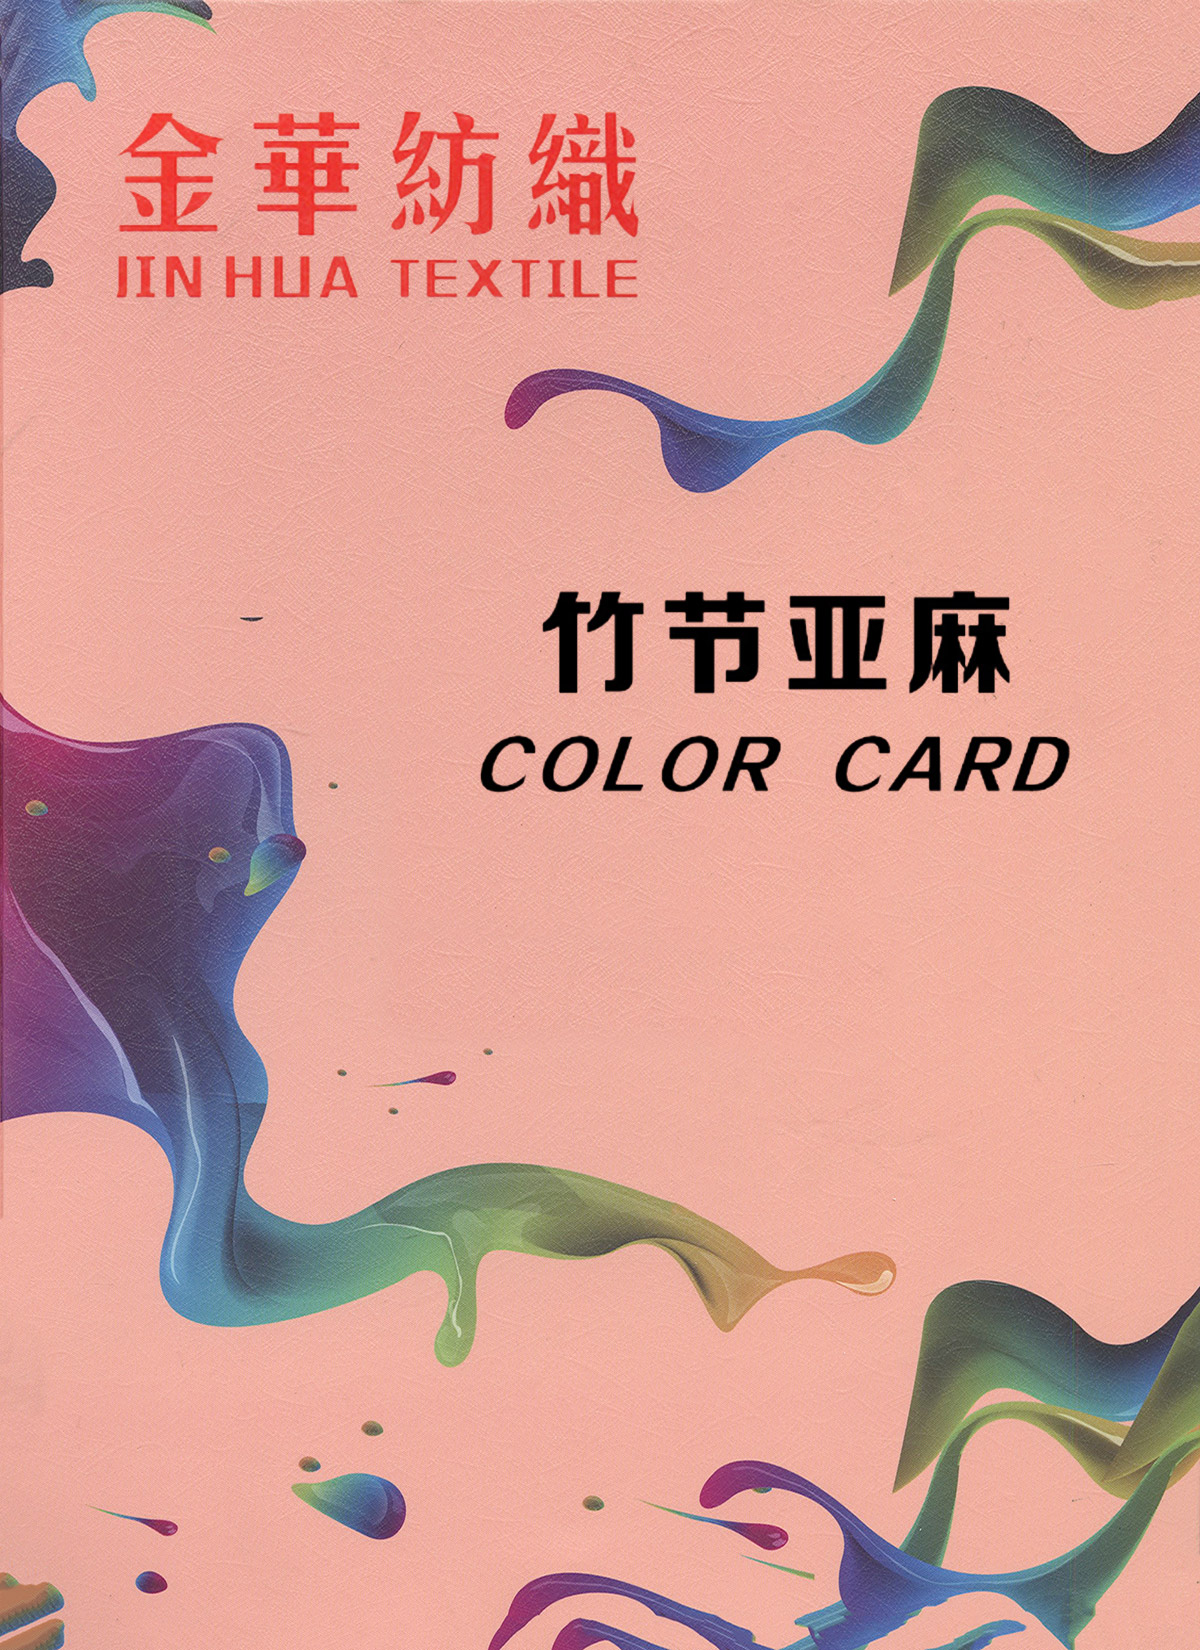 01-4851 纯亚麻色织布--深圳市泊洋纺织实业有限公司